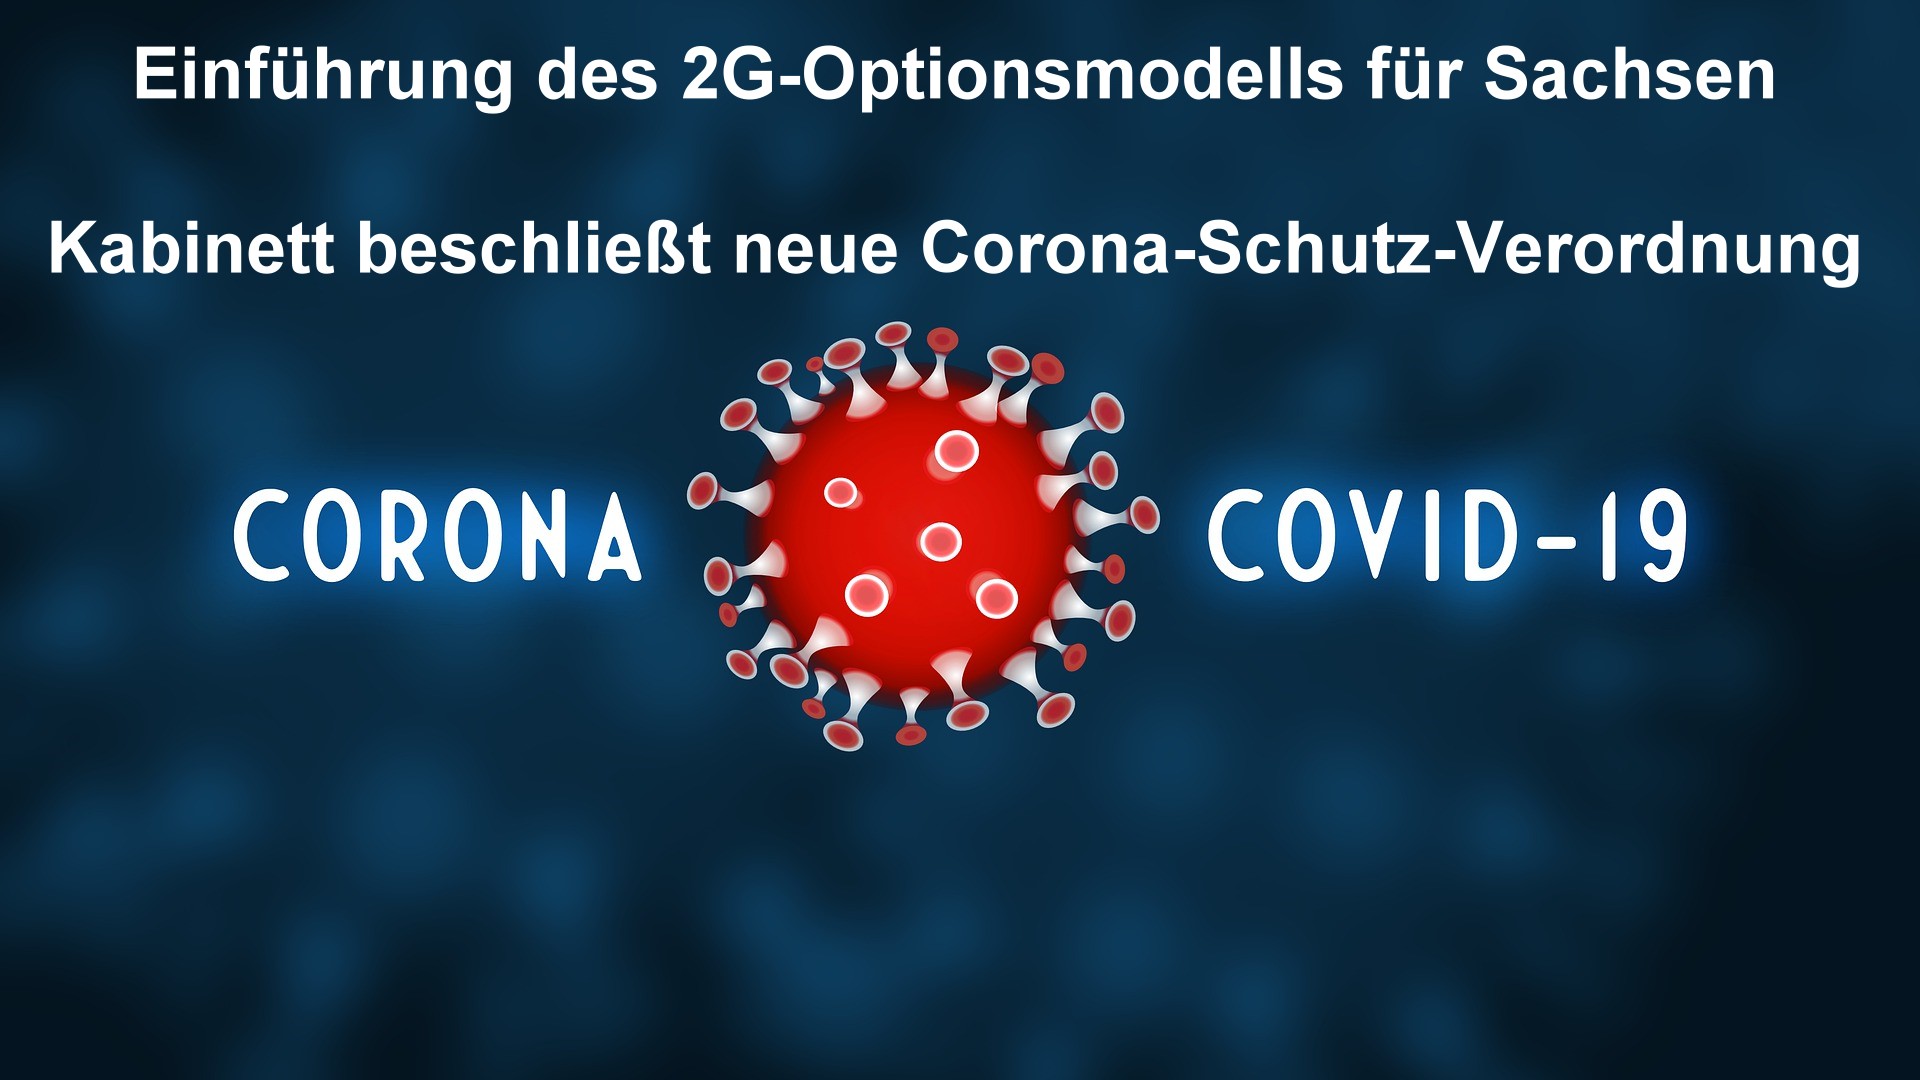 Neue Corona-Schutz-Verordnung - Einführung des 2G-Optionsmodells für Sachsen  Foto: Symbolfoto